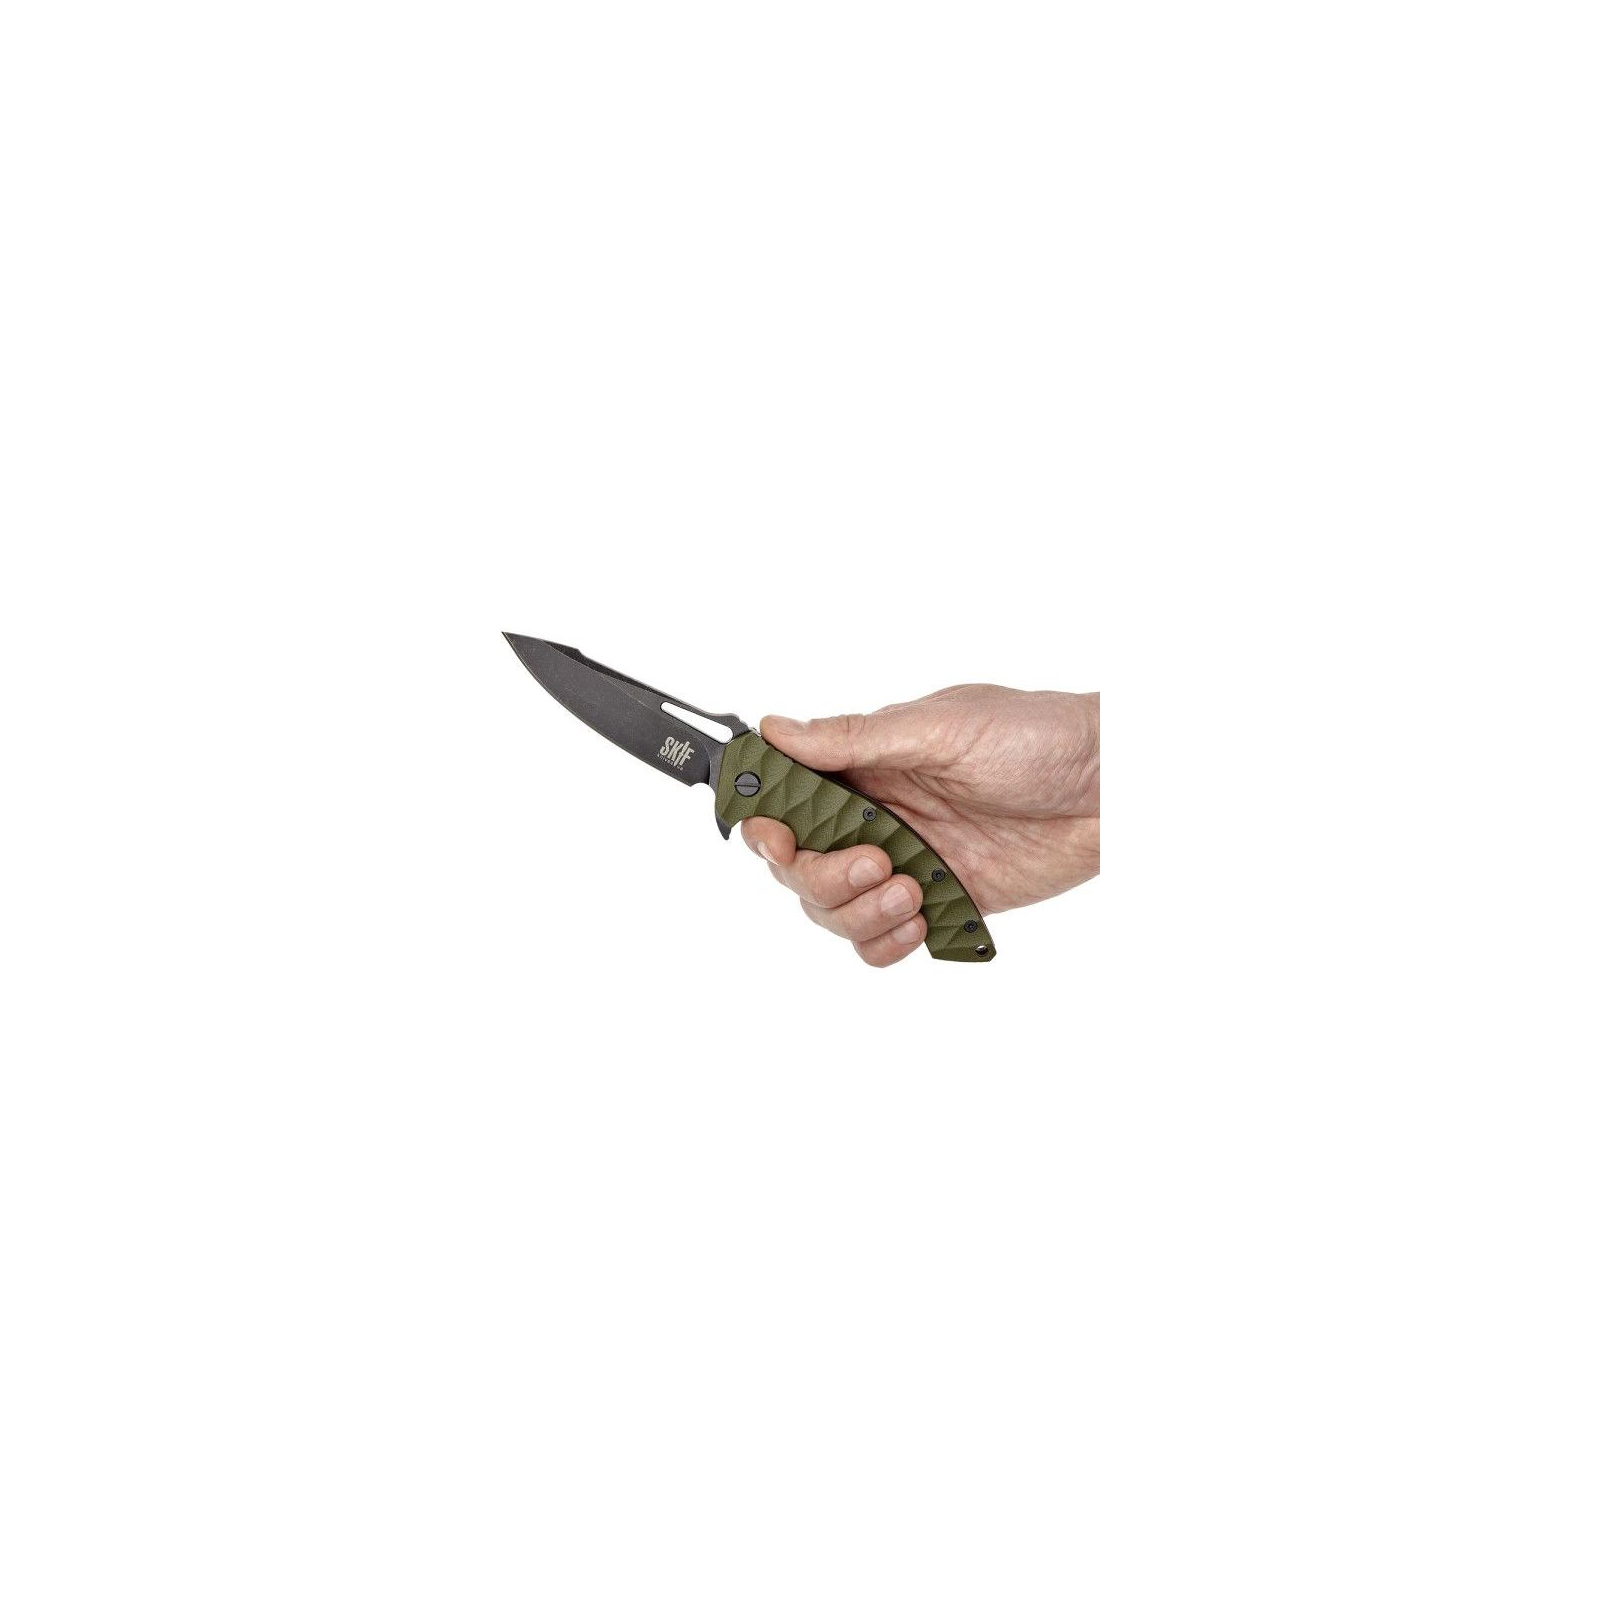 Нож Skif Shark II BSW Olive (421SEBG) изображение 5